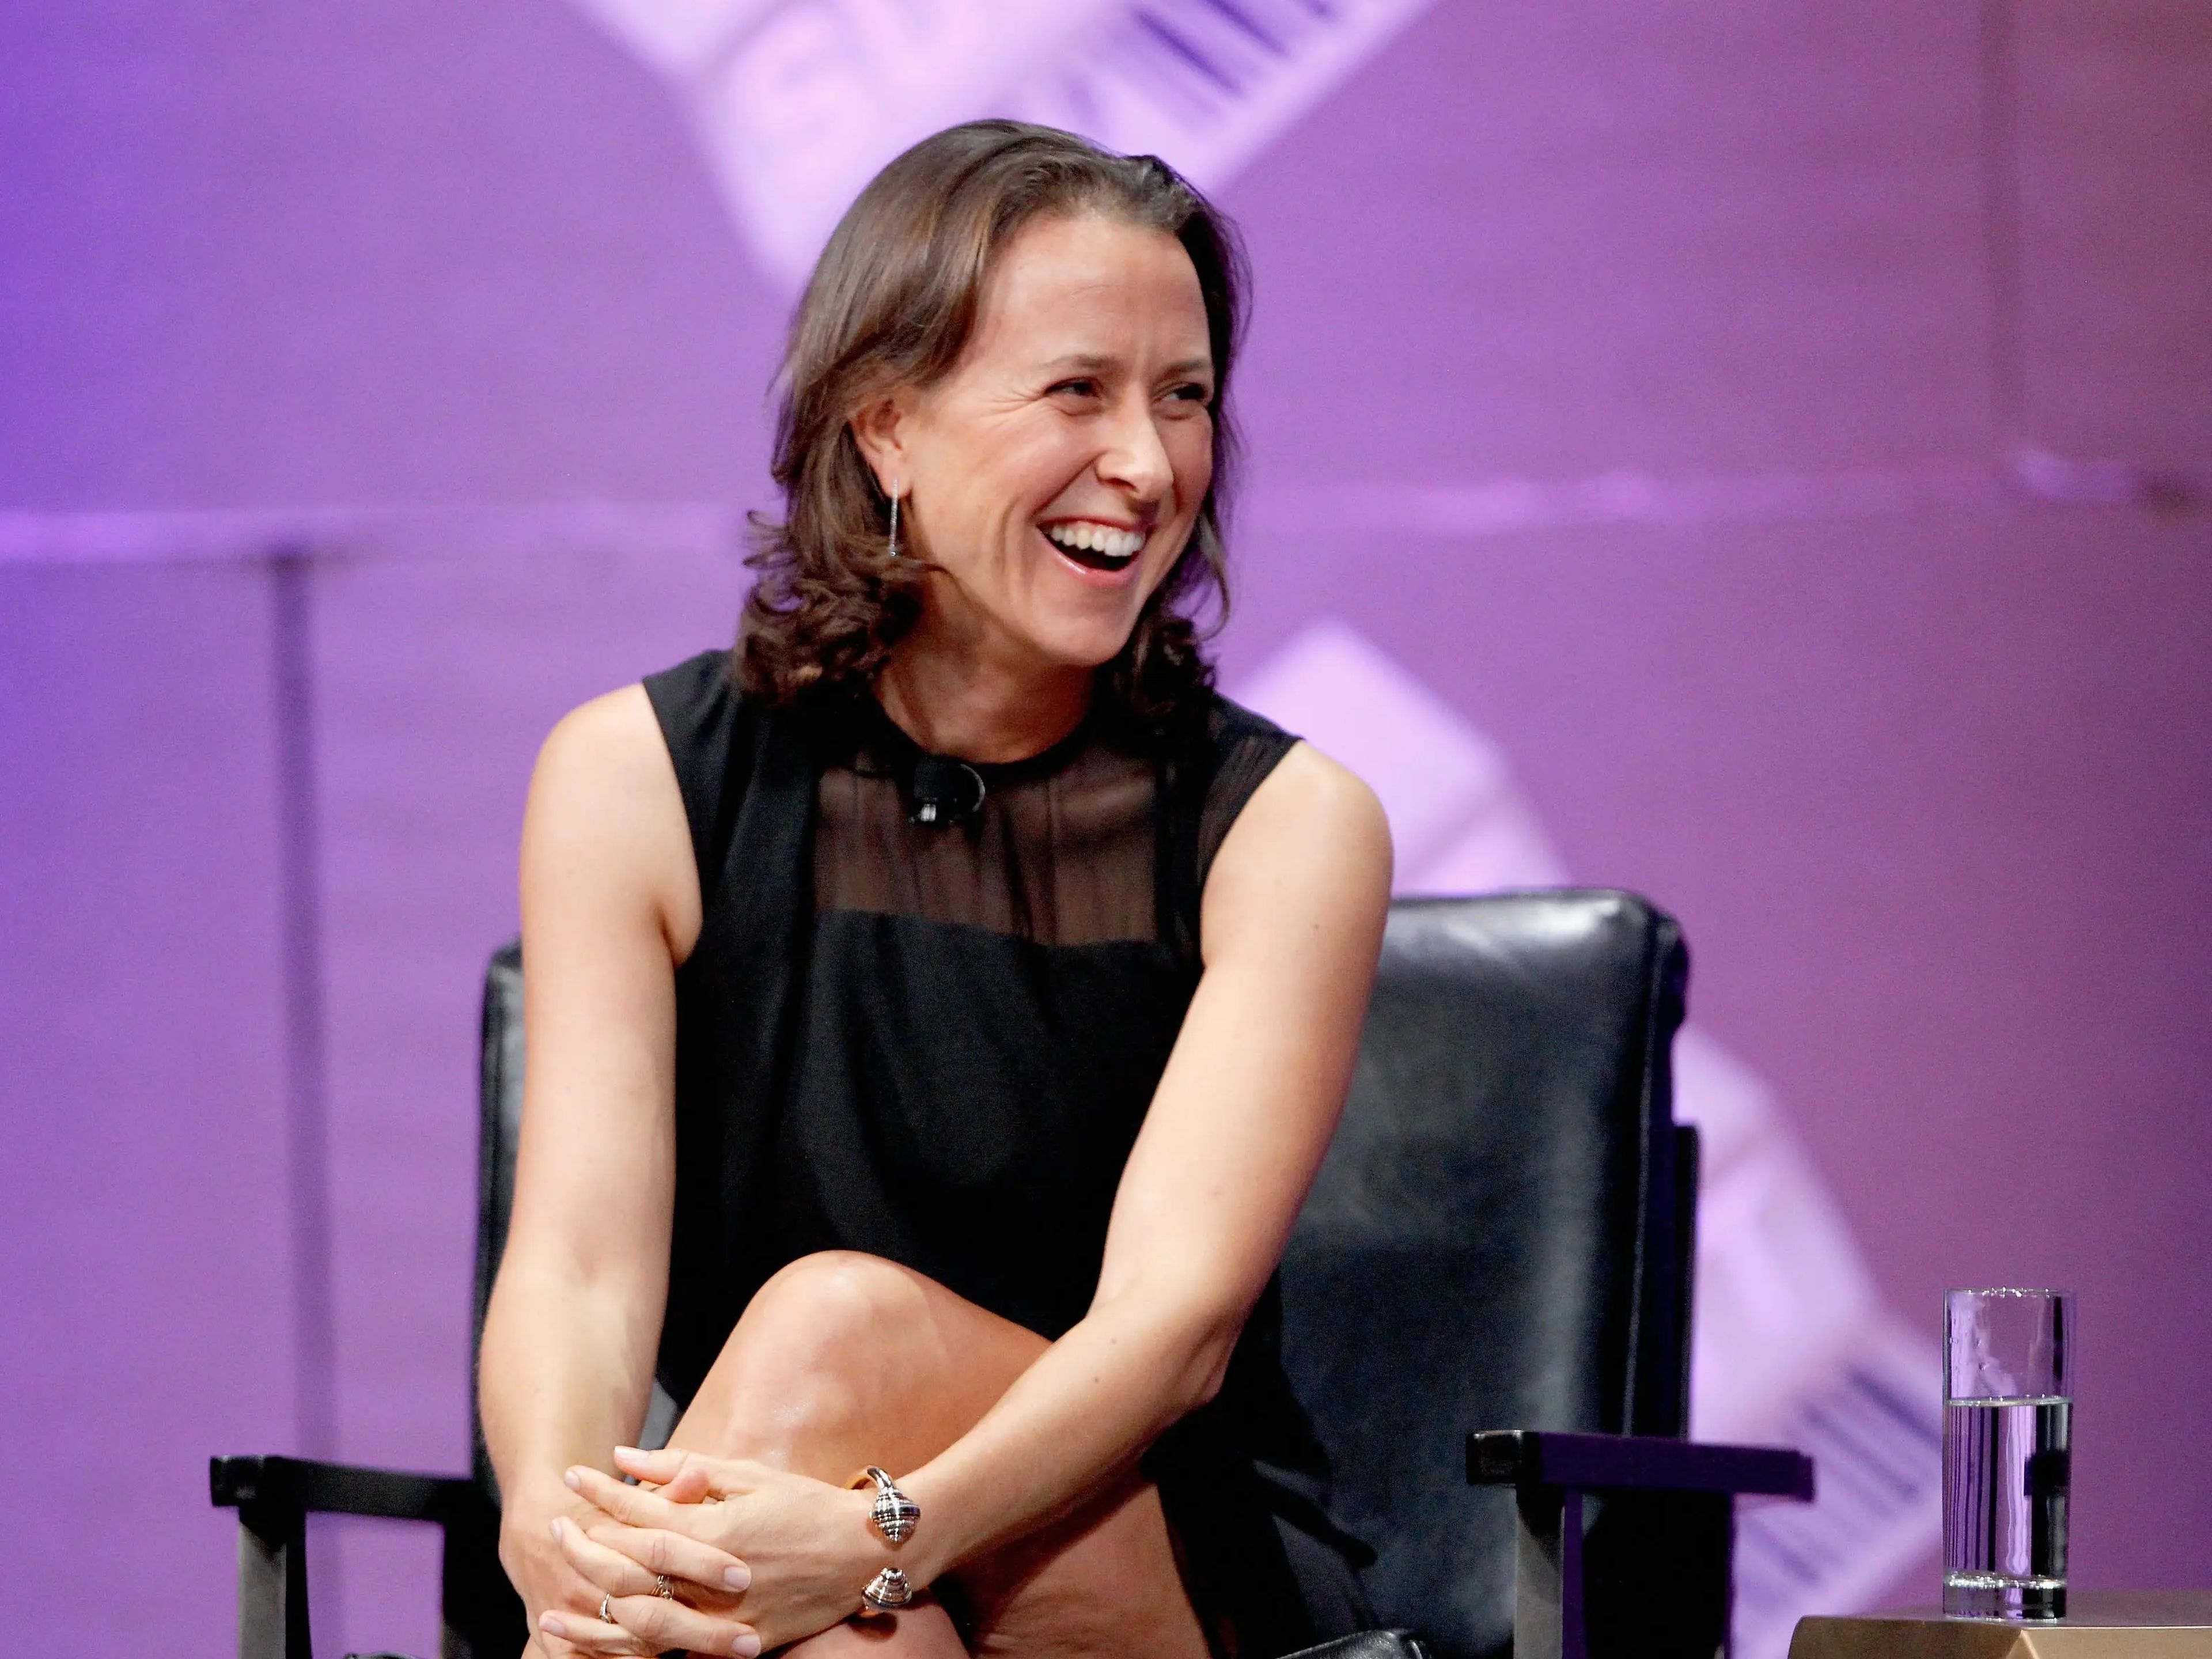 La cofundadora de 23andMe, Anne Wojcicki, con un patrimonio de 300 millones de dólares según Forbes, es inversora en la startup de longevidad Gameto.